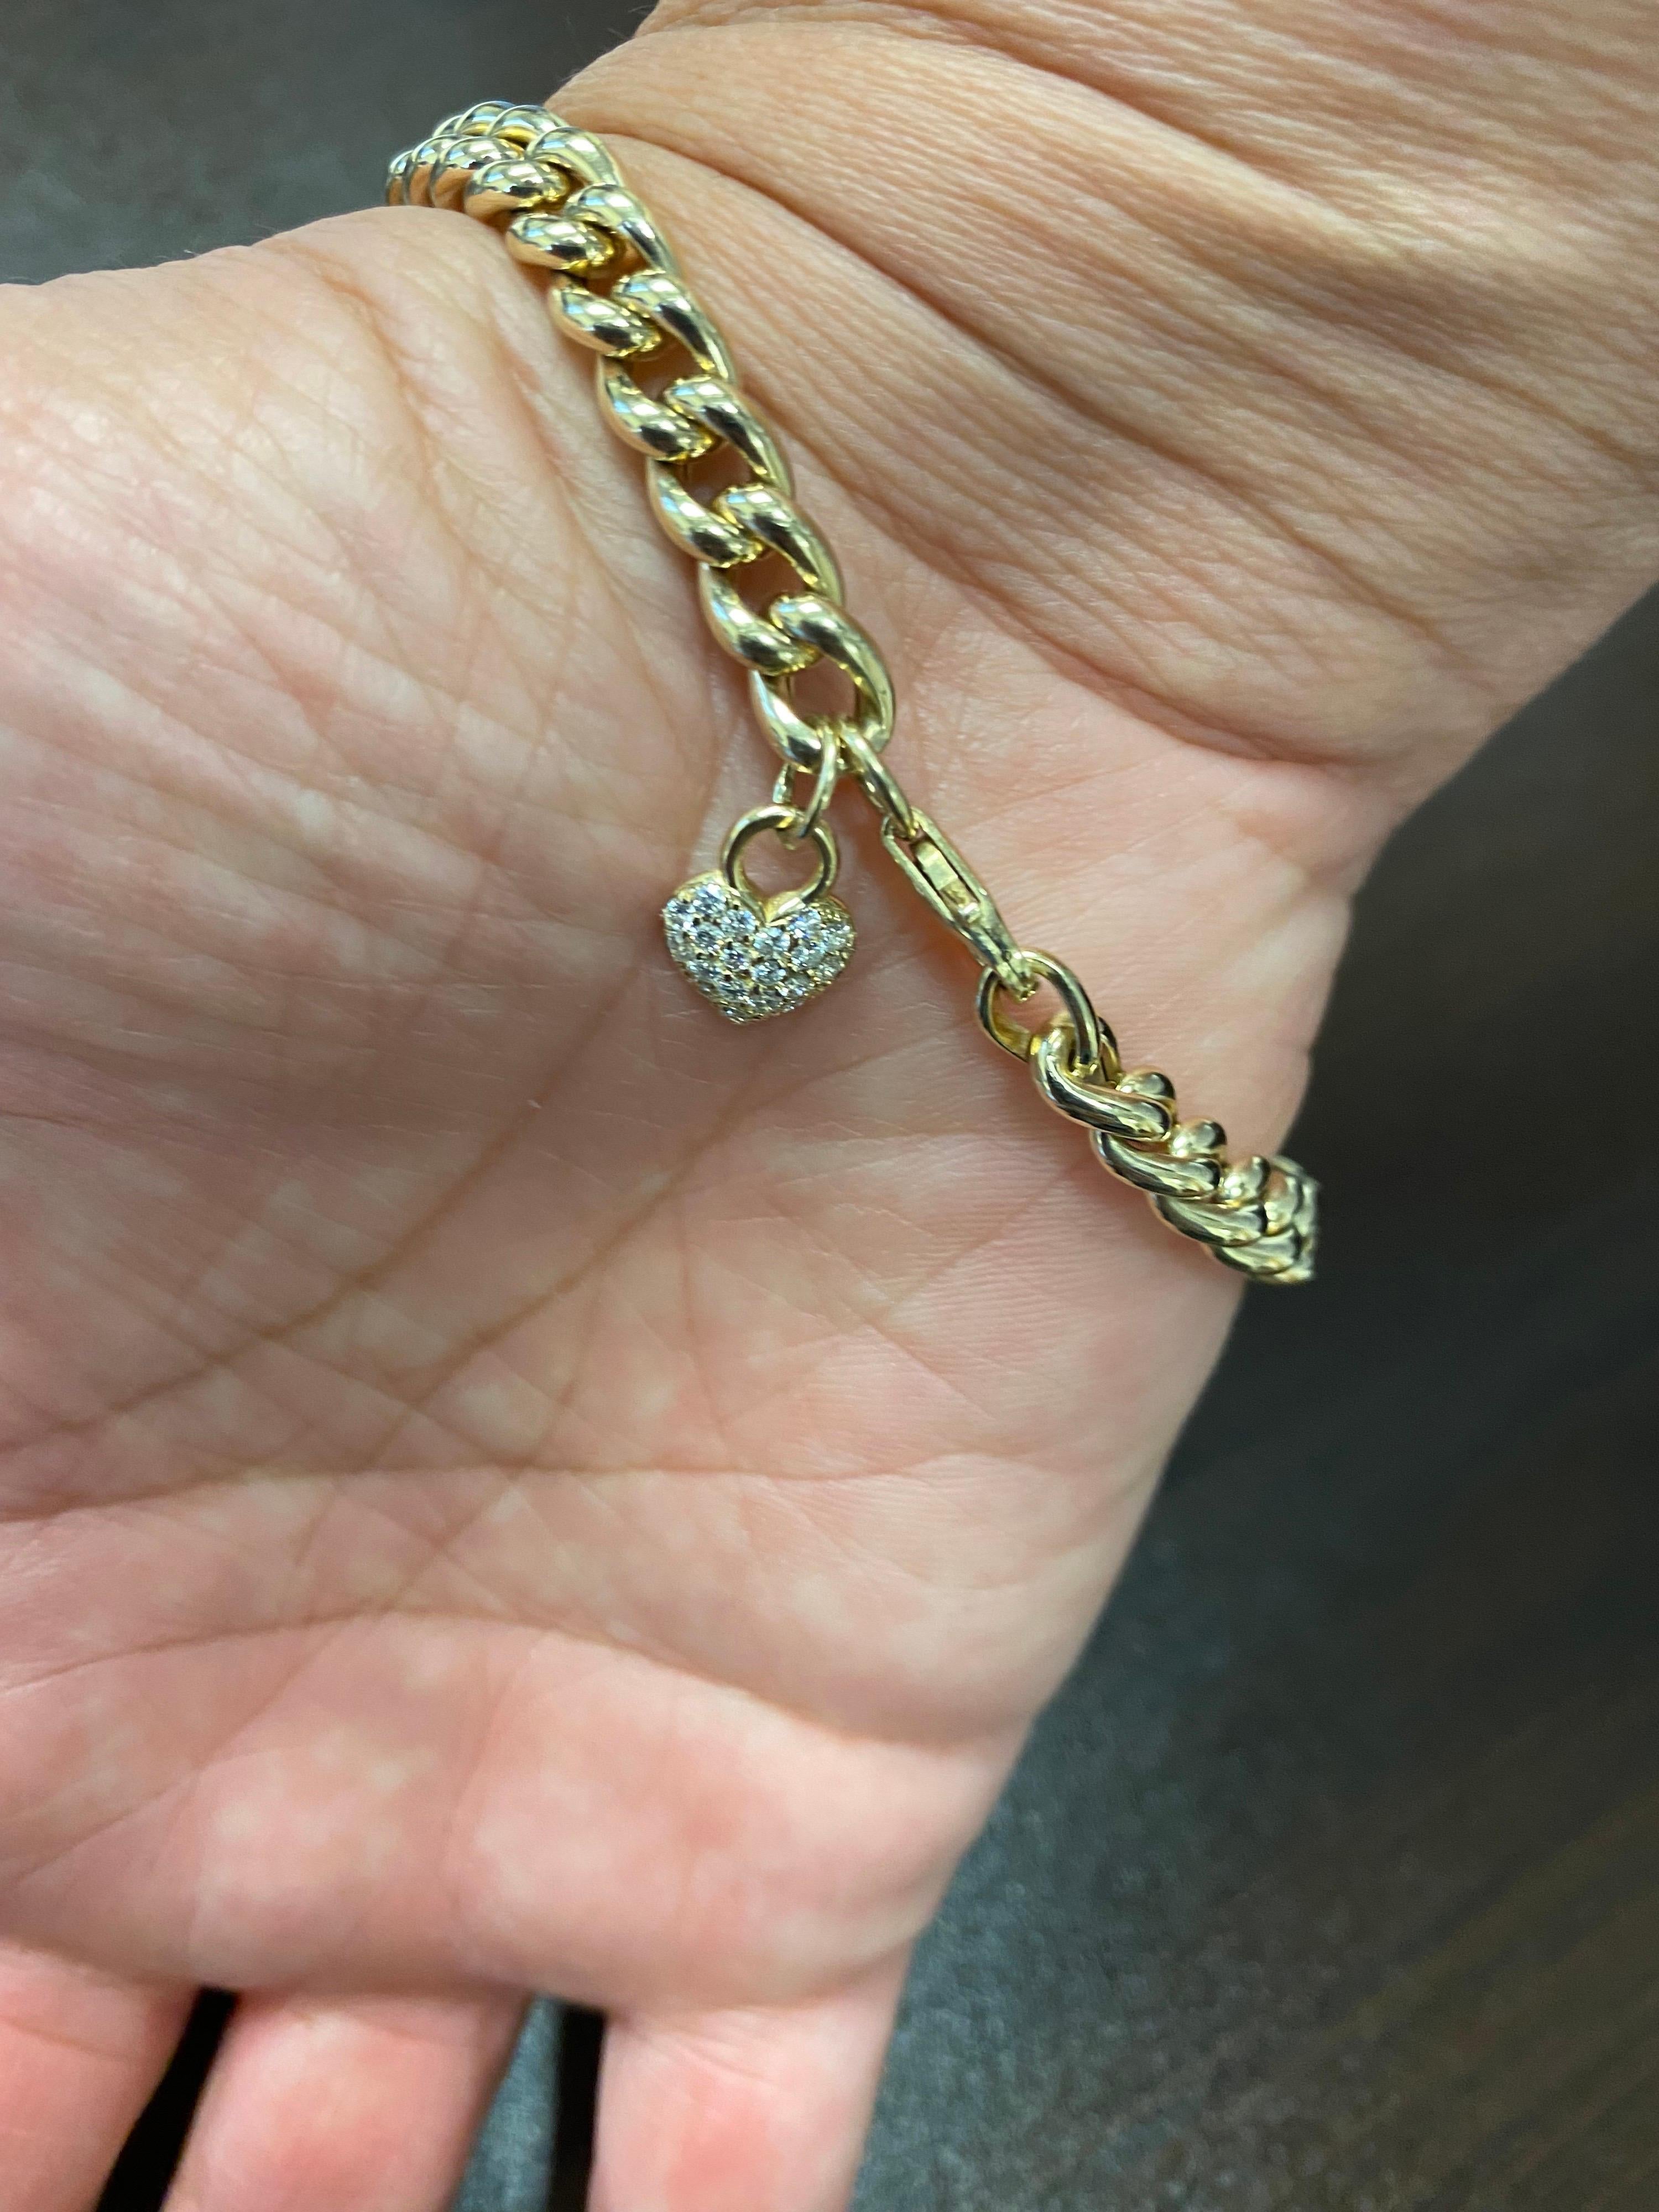 Diamantarmband aus 18 Karat Gelbgold mit kubanischem Glied. Die Herzschließe des Armbands ist ebenfalls mit Diamanten besetzt. Das Gesamtkaratgewicht des Armbands beträgt 1,25 Karat. Die Diamanten sind mit 0,01 Karat pro Stein besetzt.
Die Farbe der